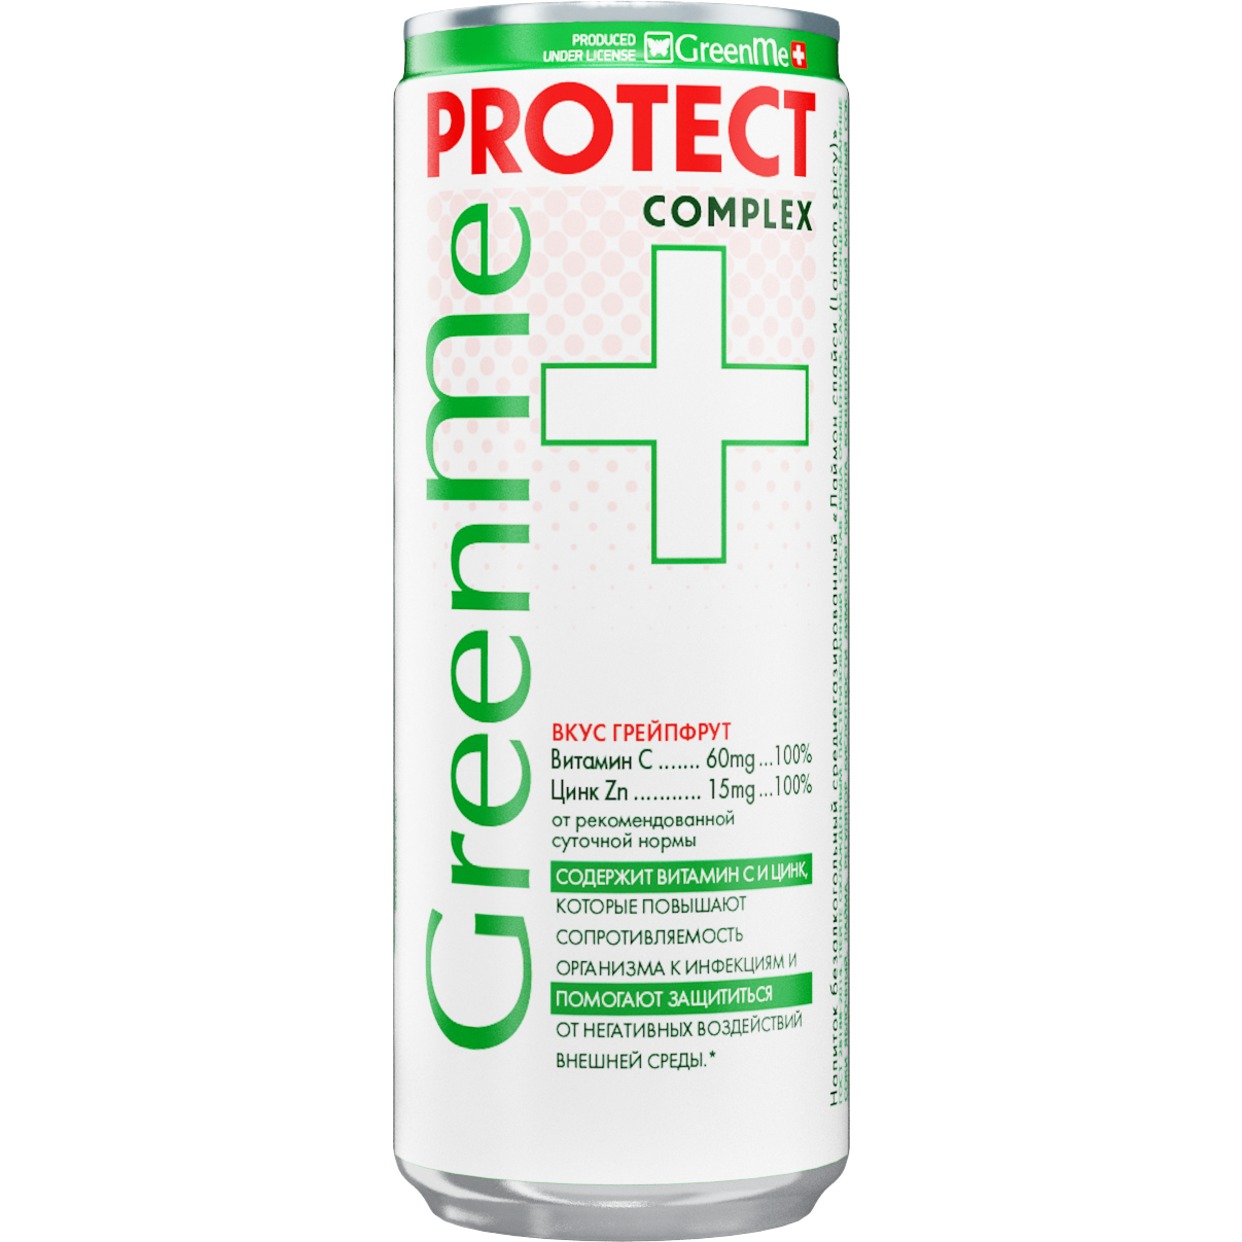 Напиток безалкогольный тонизирующий газированный «ГринМи плюс протект (GreenMe plus protect)» 0,33 л. по акции в Пятерочке